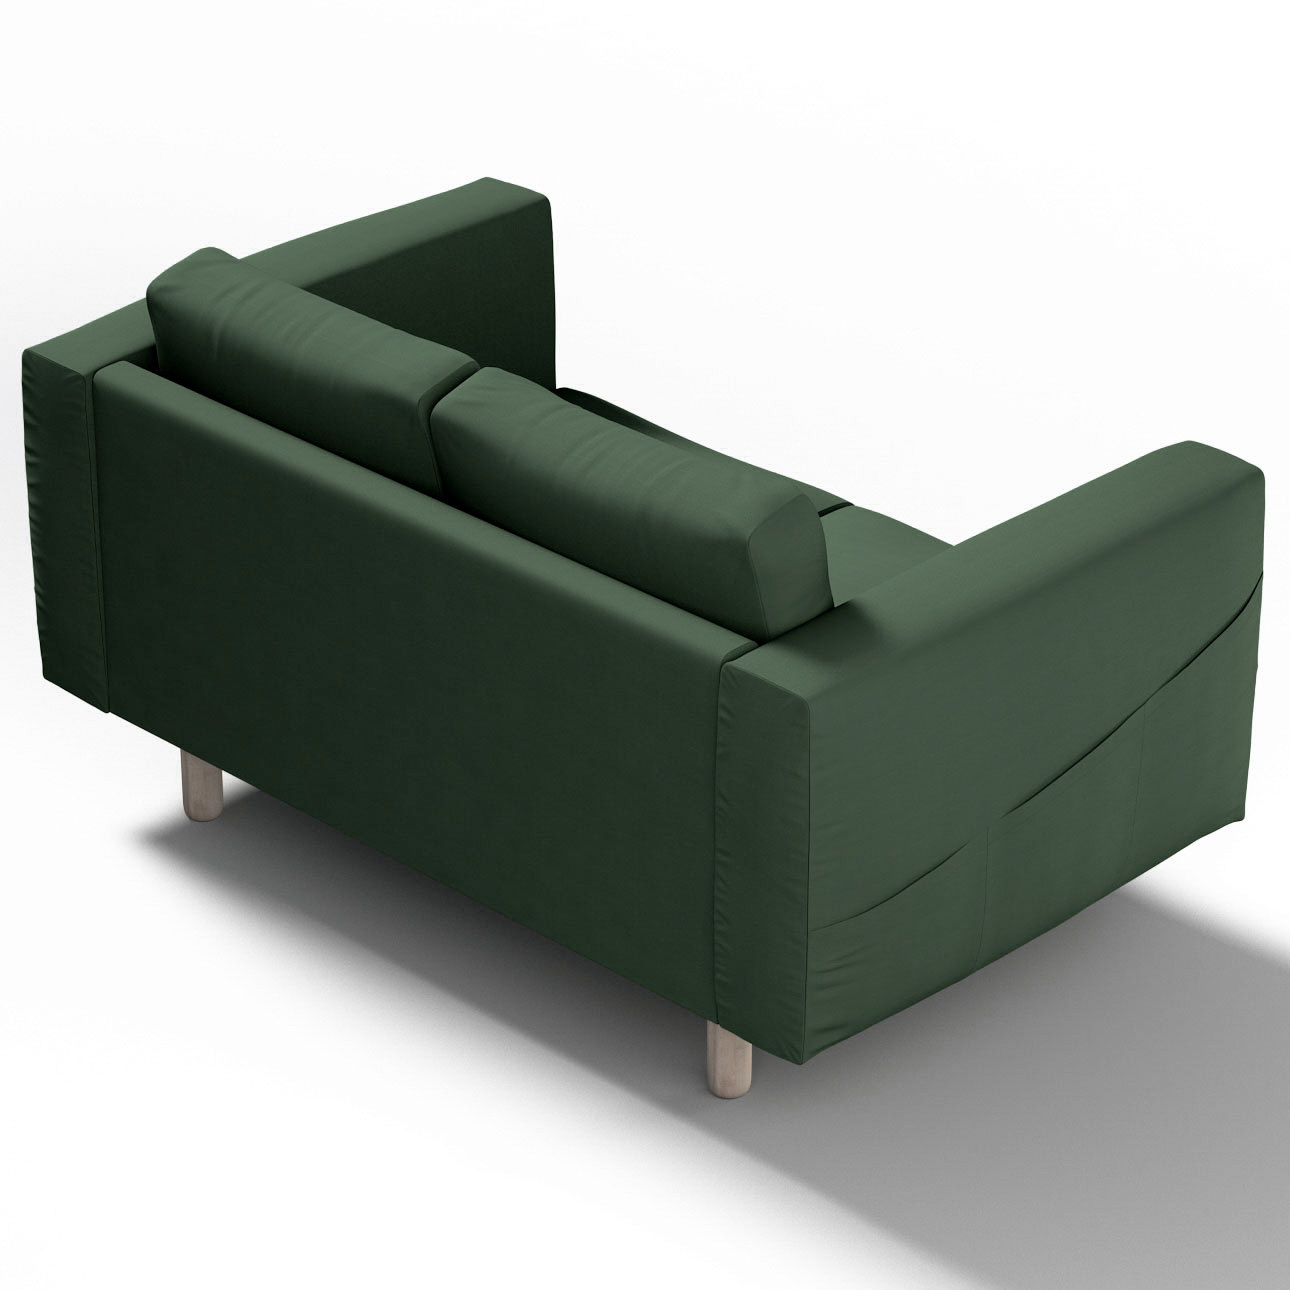 Bezug für Norsborg 2-Sitzer Sofa, waldgrün, Norsborg 2-Sitzer Sofabezug, Co günstig online kaufen